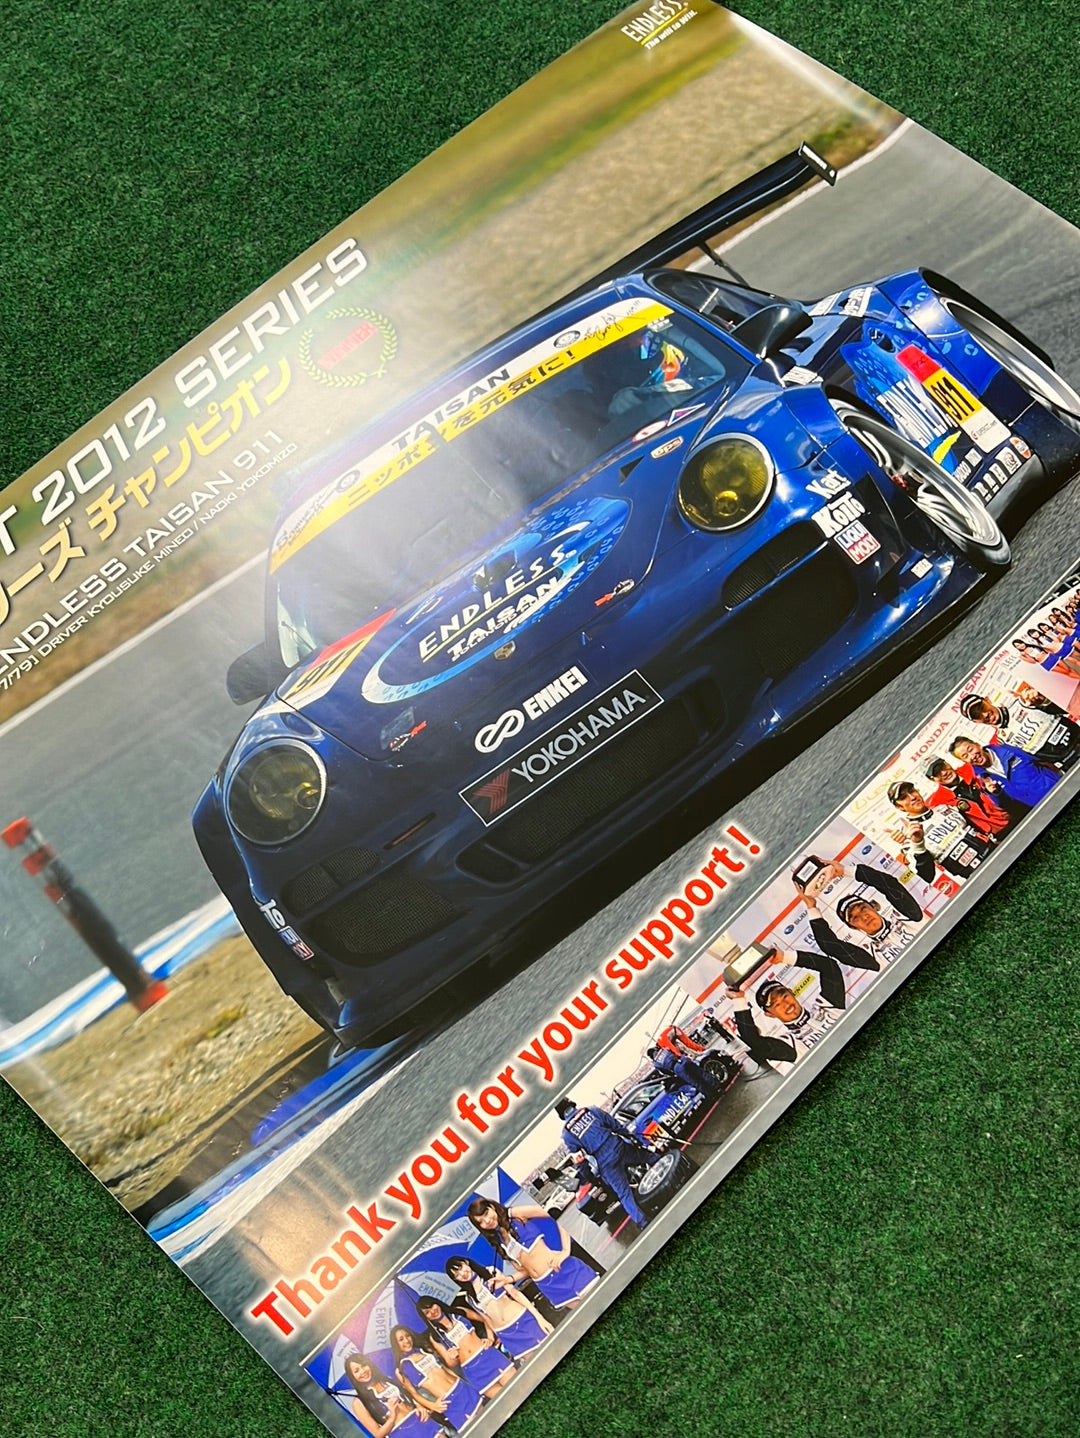 ENDLESS ADVAN Yokohama Super GT 2012 Porsche 911 GT300 Winner Poster